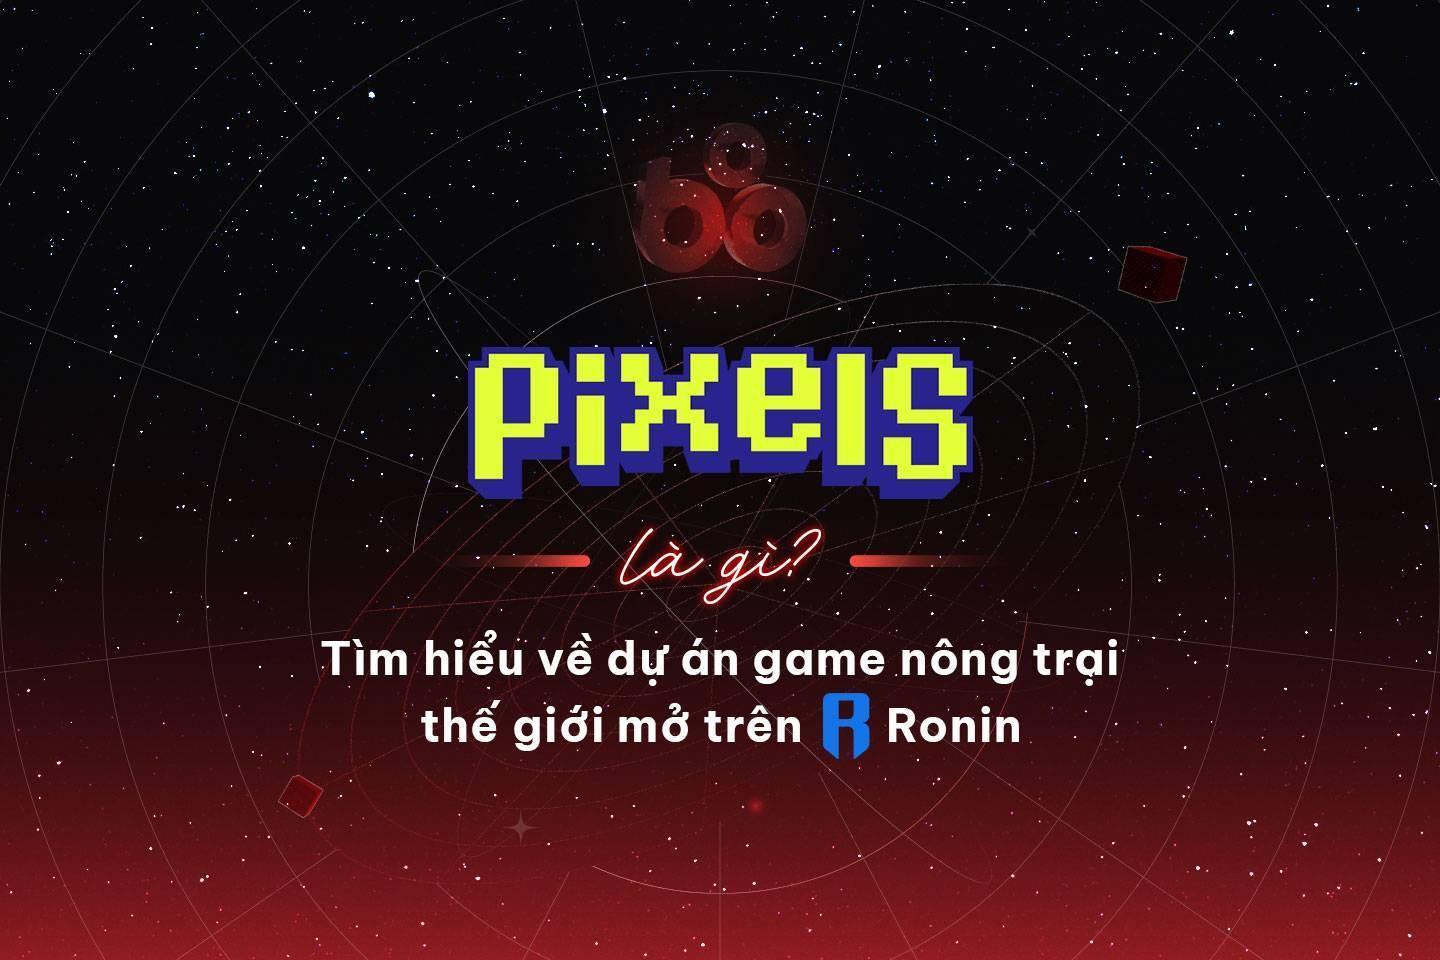 pixels-la-gi-tim-hieu-ve-game-nft-nong-trai-the-gioi-mo-tren-ronin